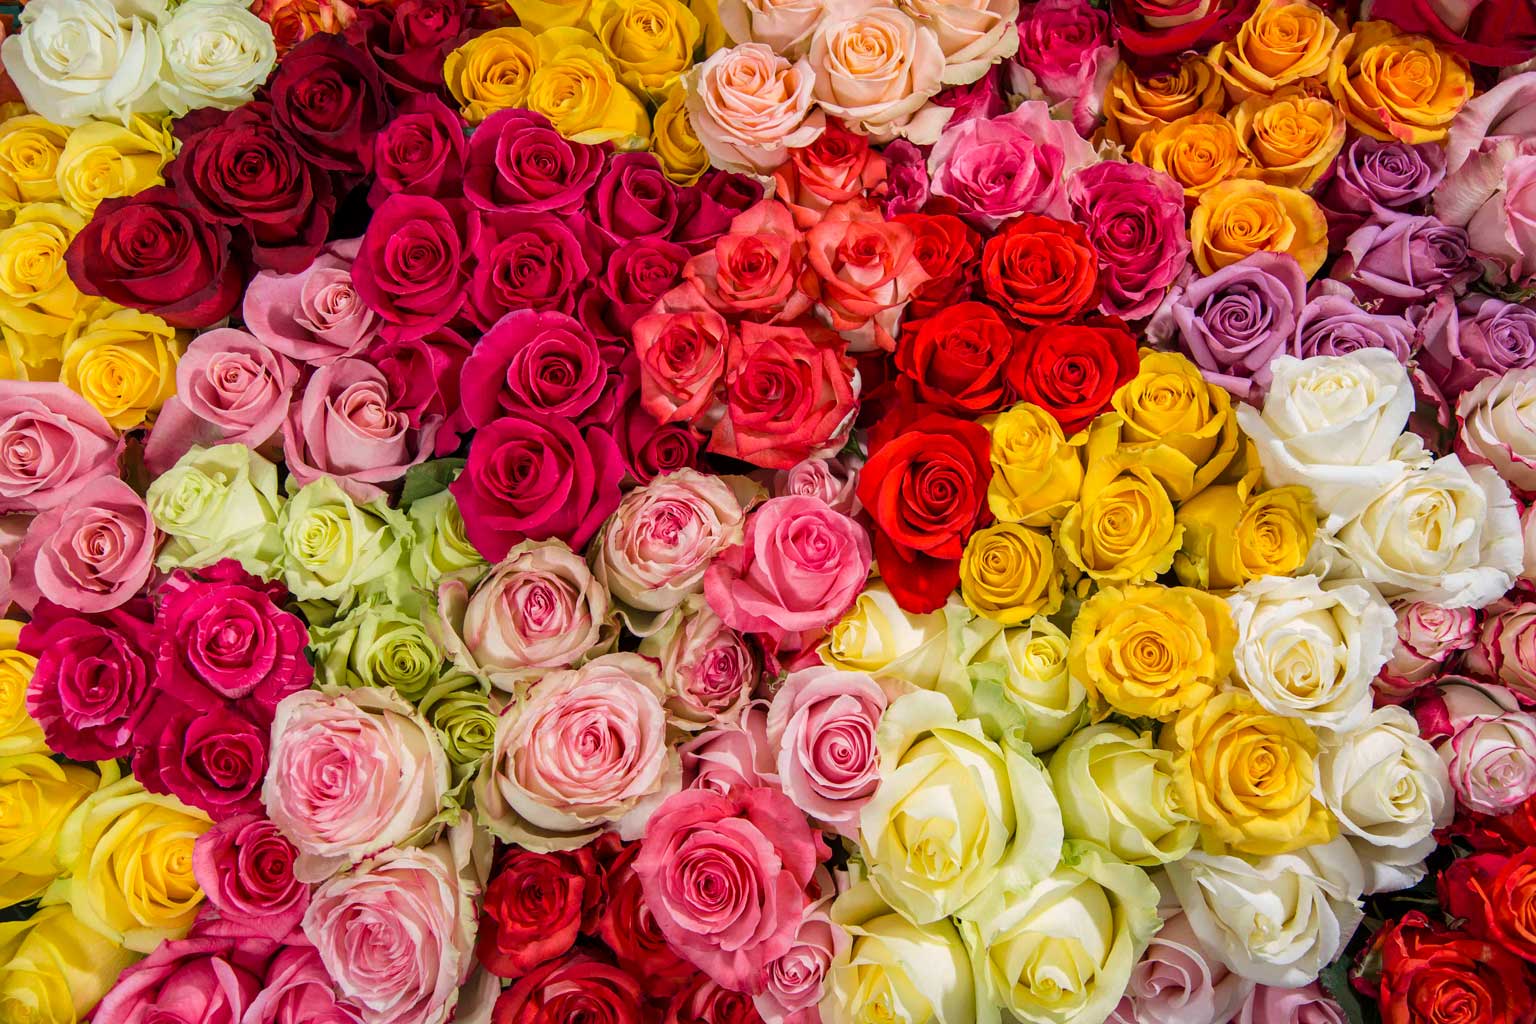 La Florela roses - flowers that symbolize love